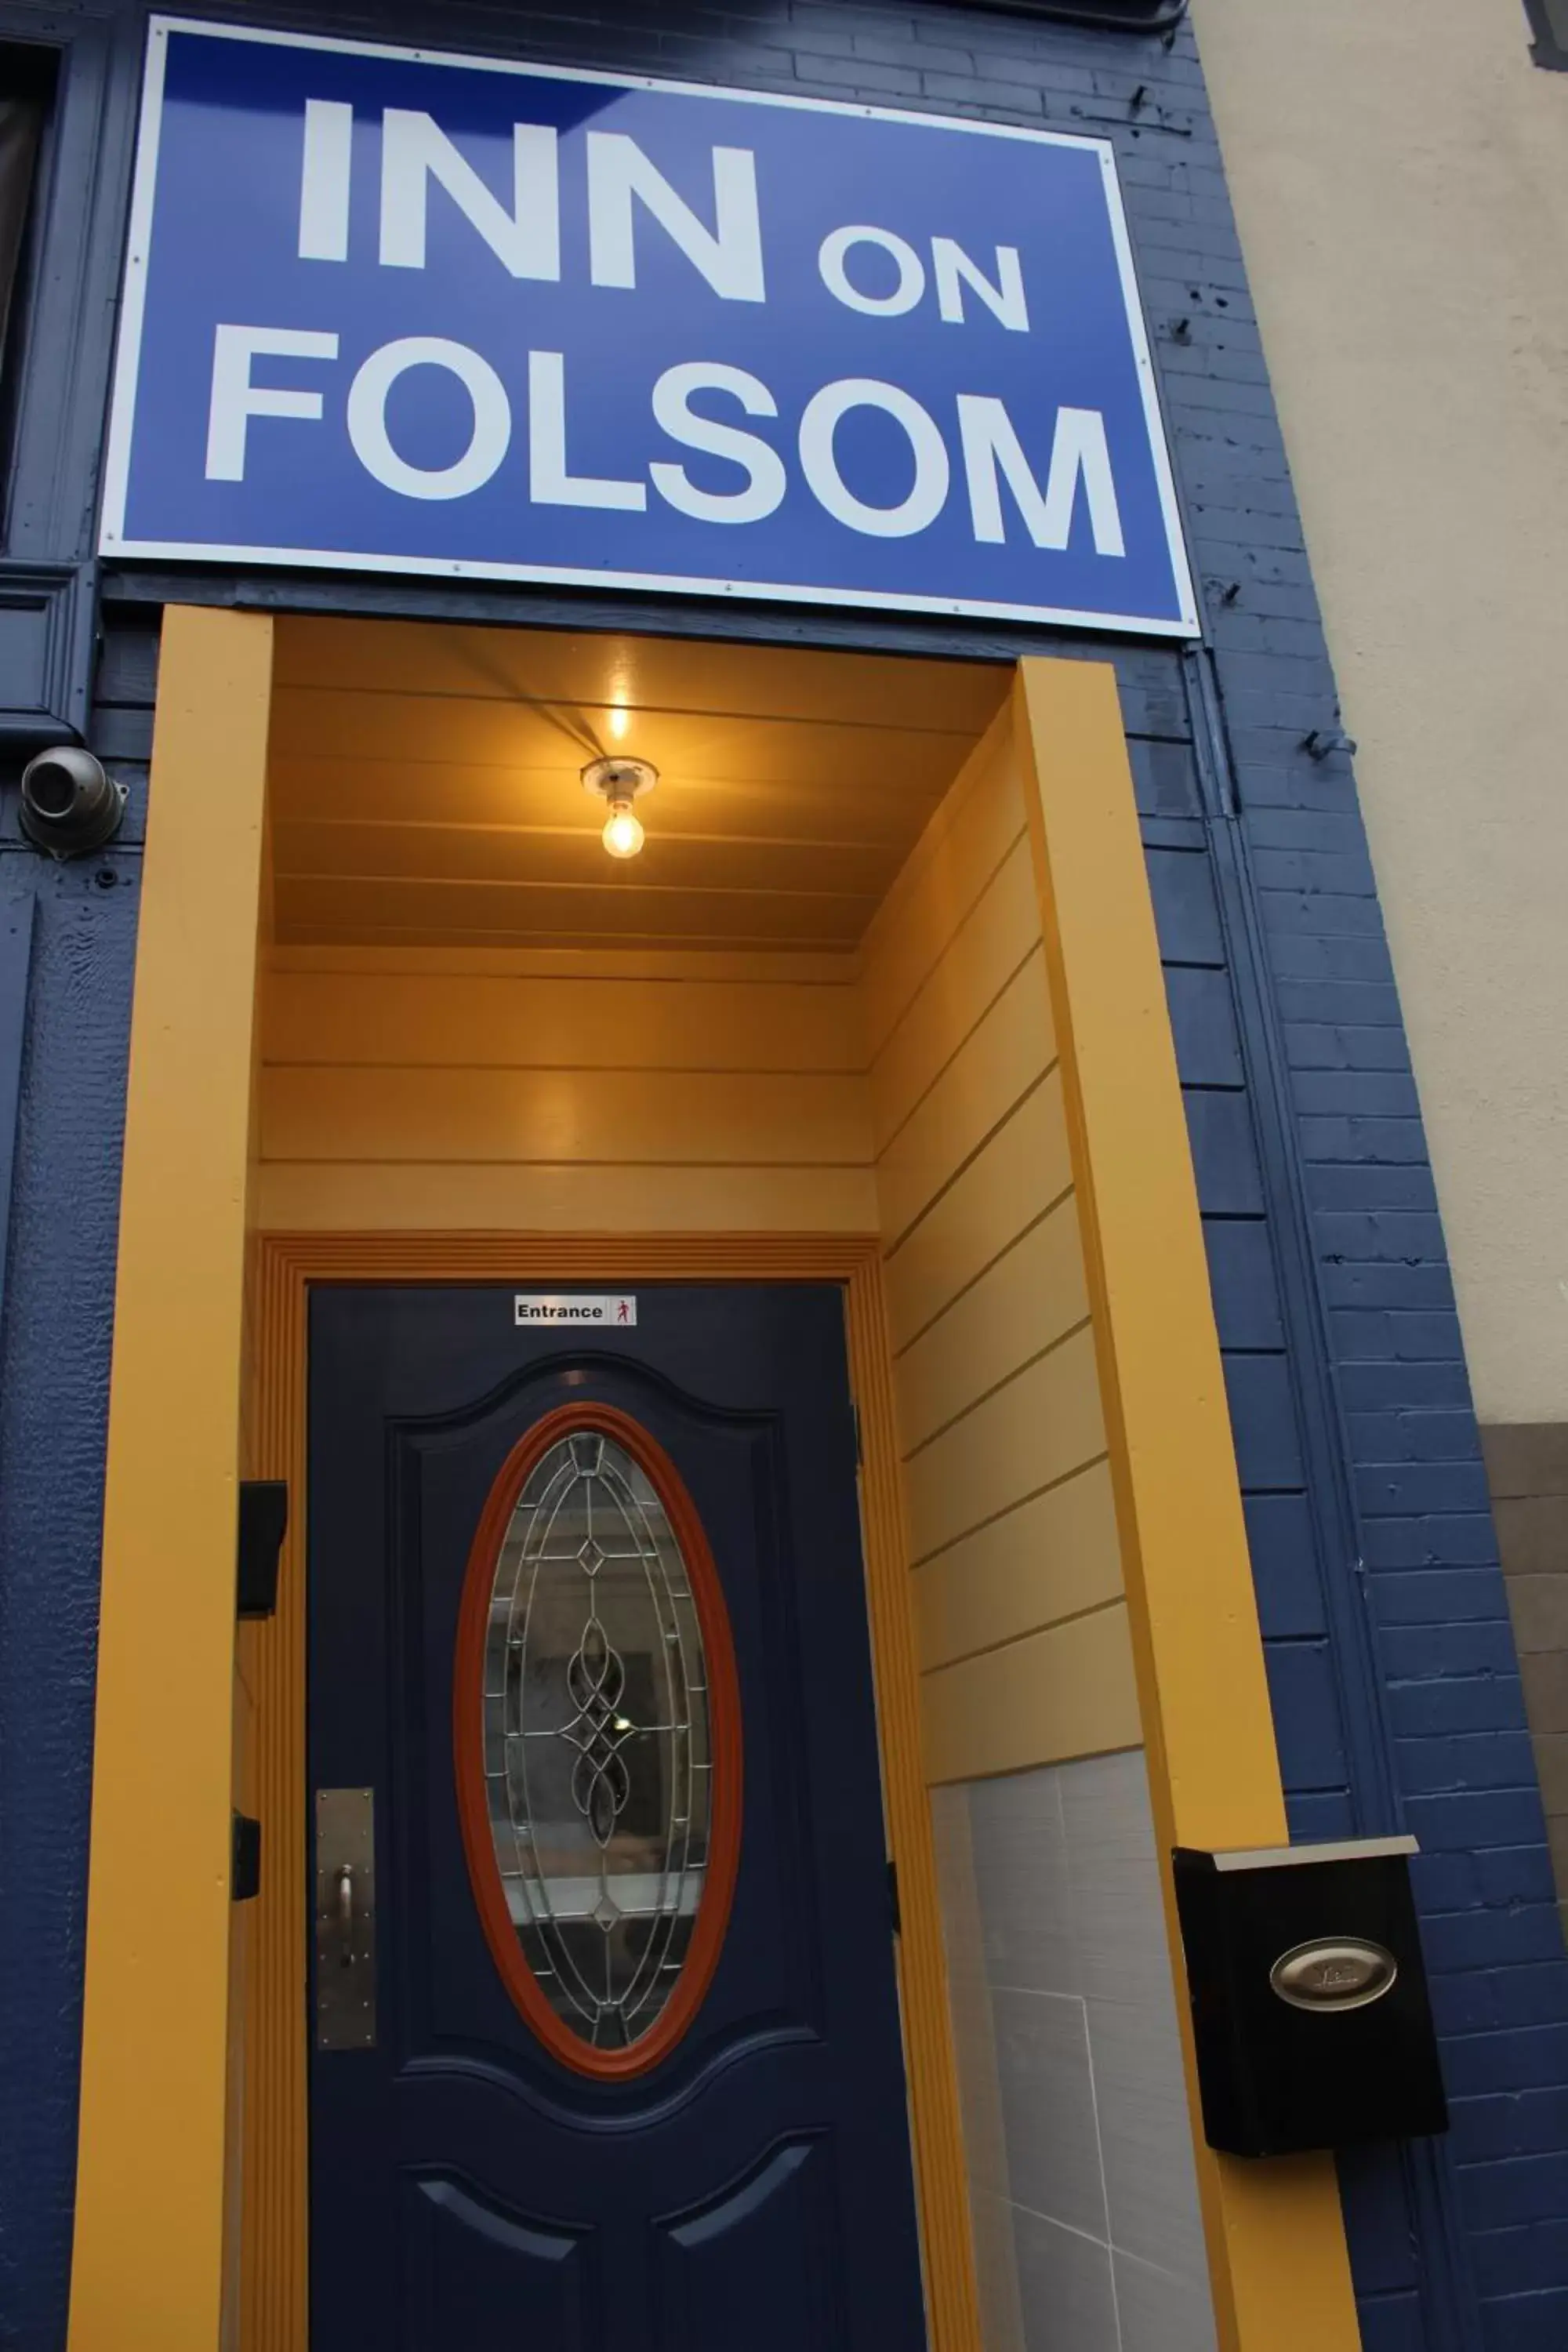 Facade/entrance in Inn on Folsom